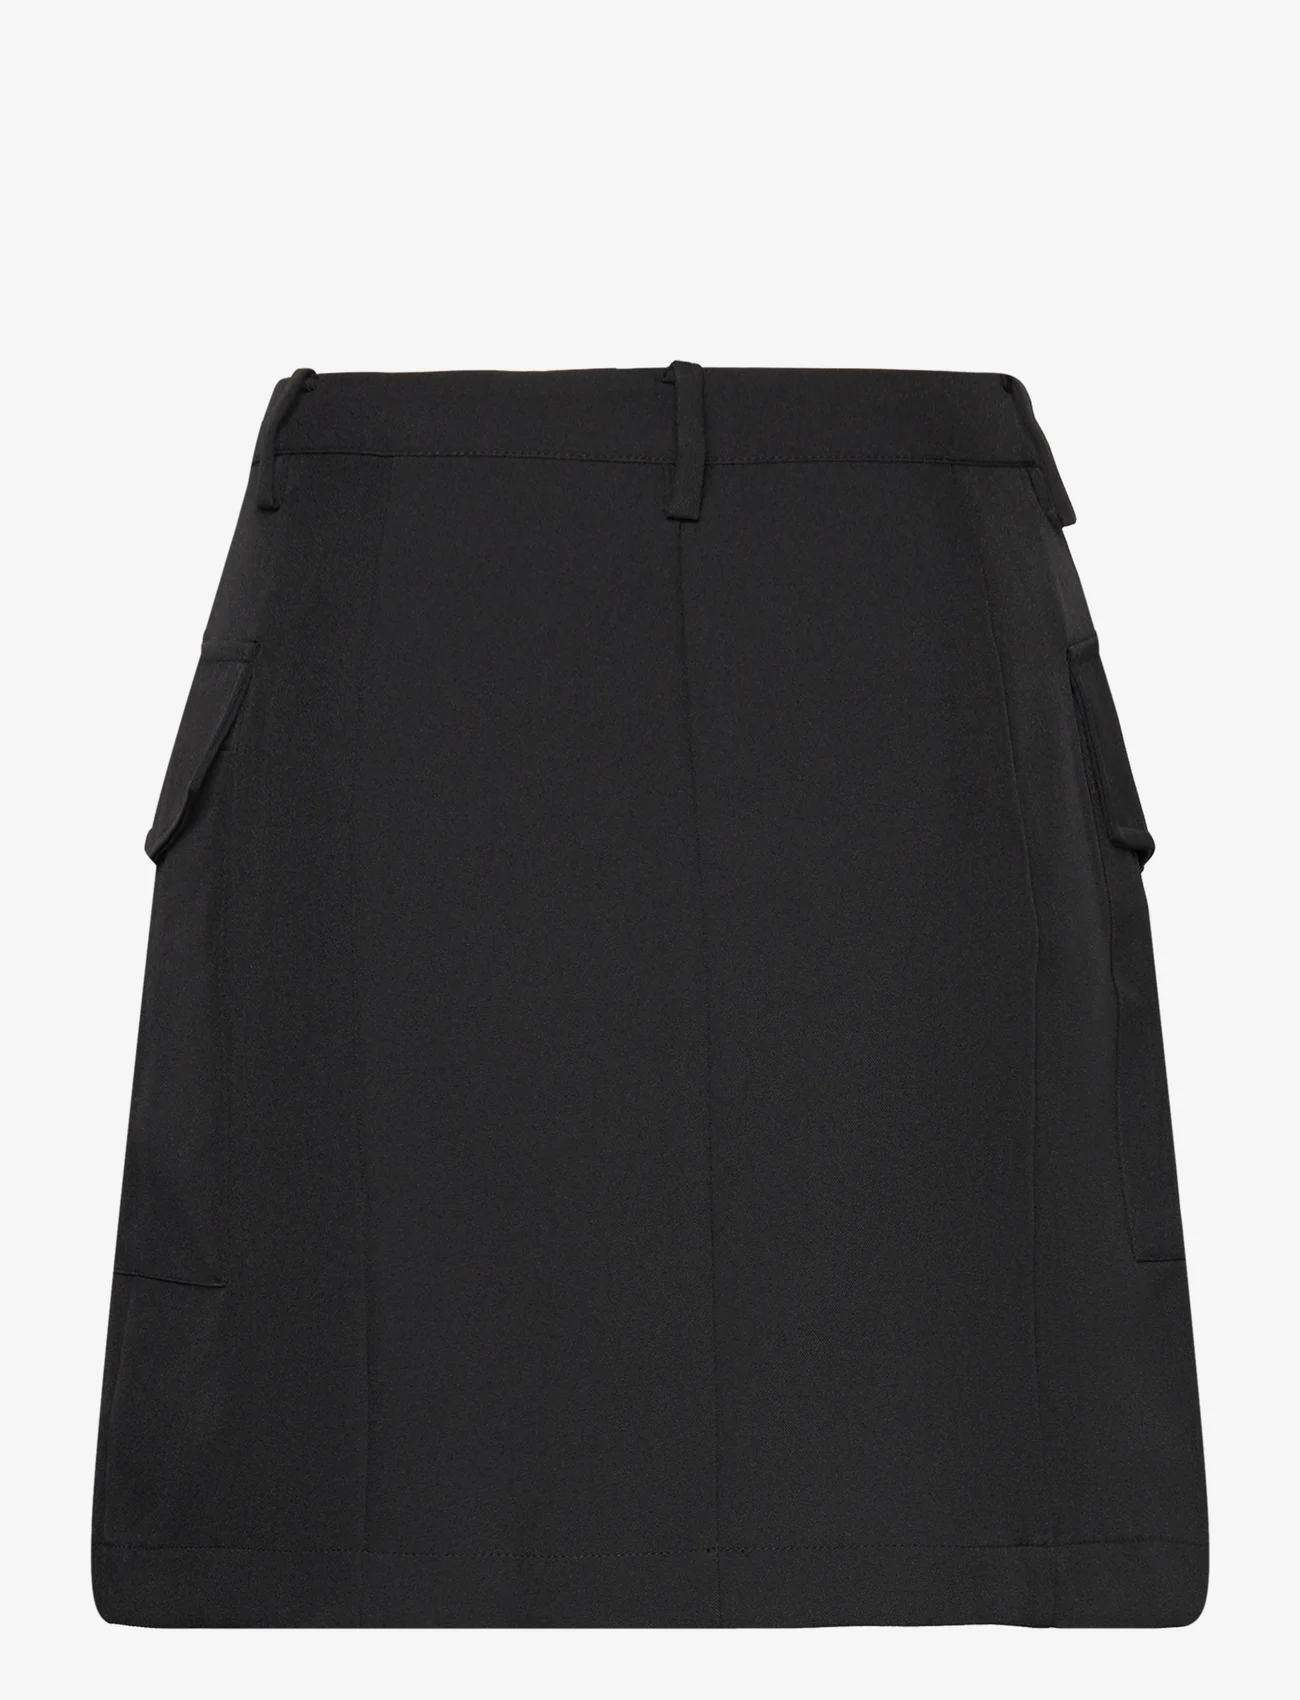 bzr - VibeBZCargo miniskirt - korte nederdele - black - 1